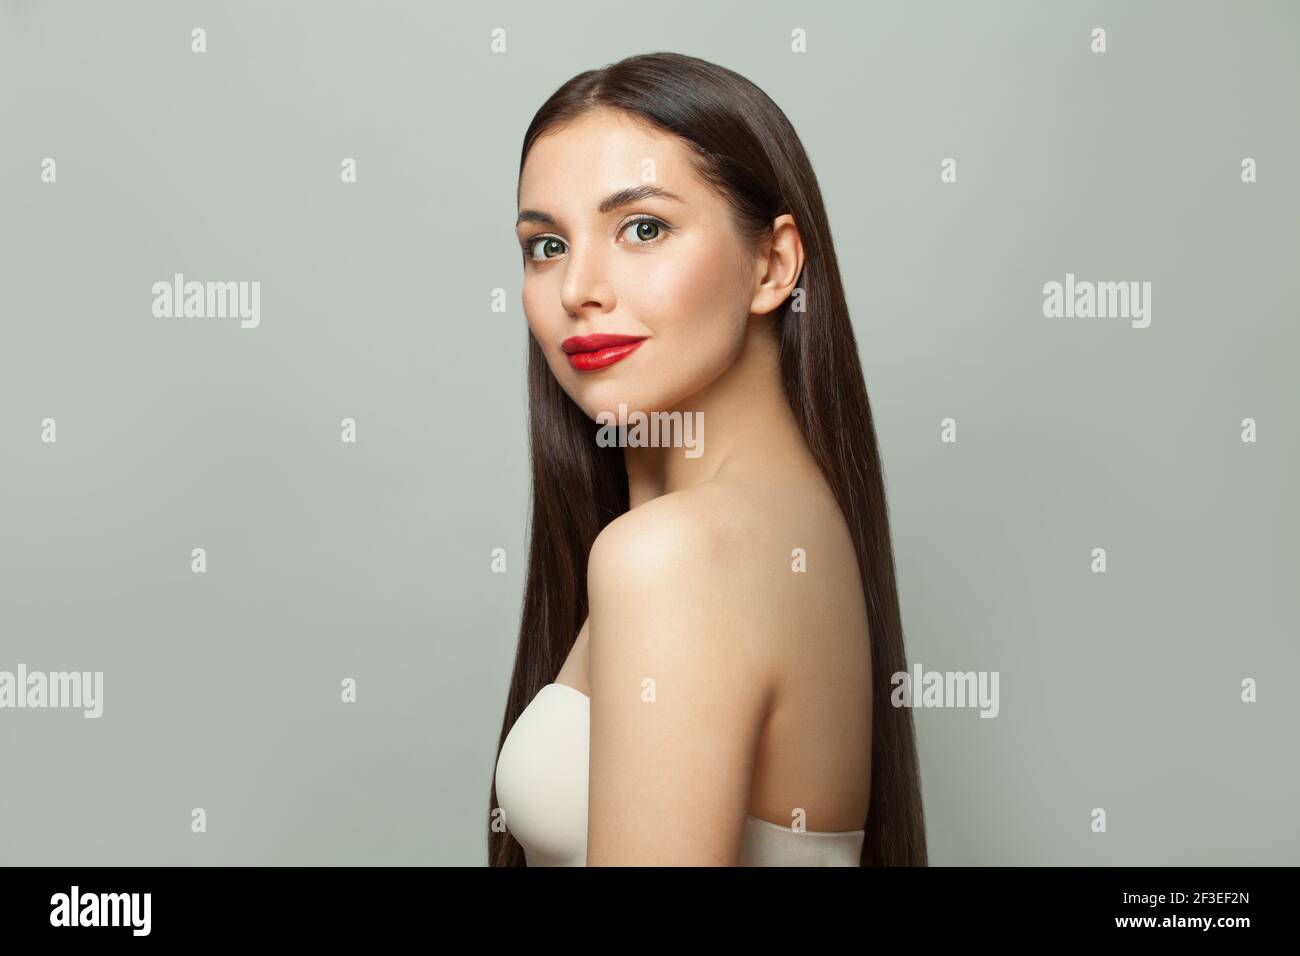 Giovane attraente modello sano Bruna donna con pelle chiara e. capelli lisci lunghi e luminosi su sfondo bianco Foto Stock